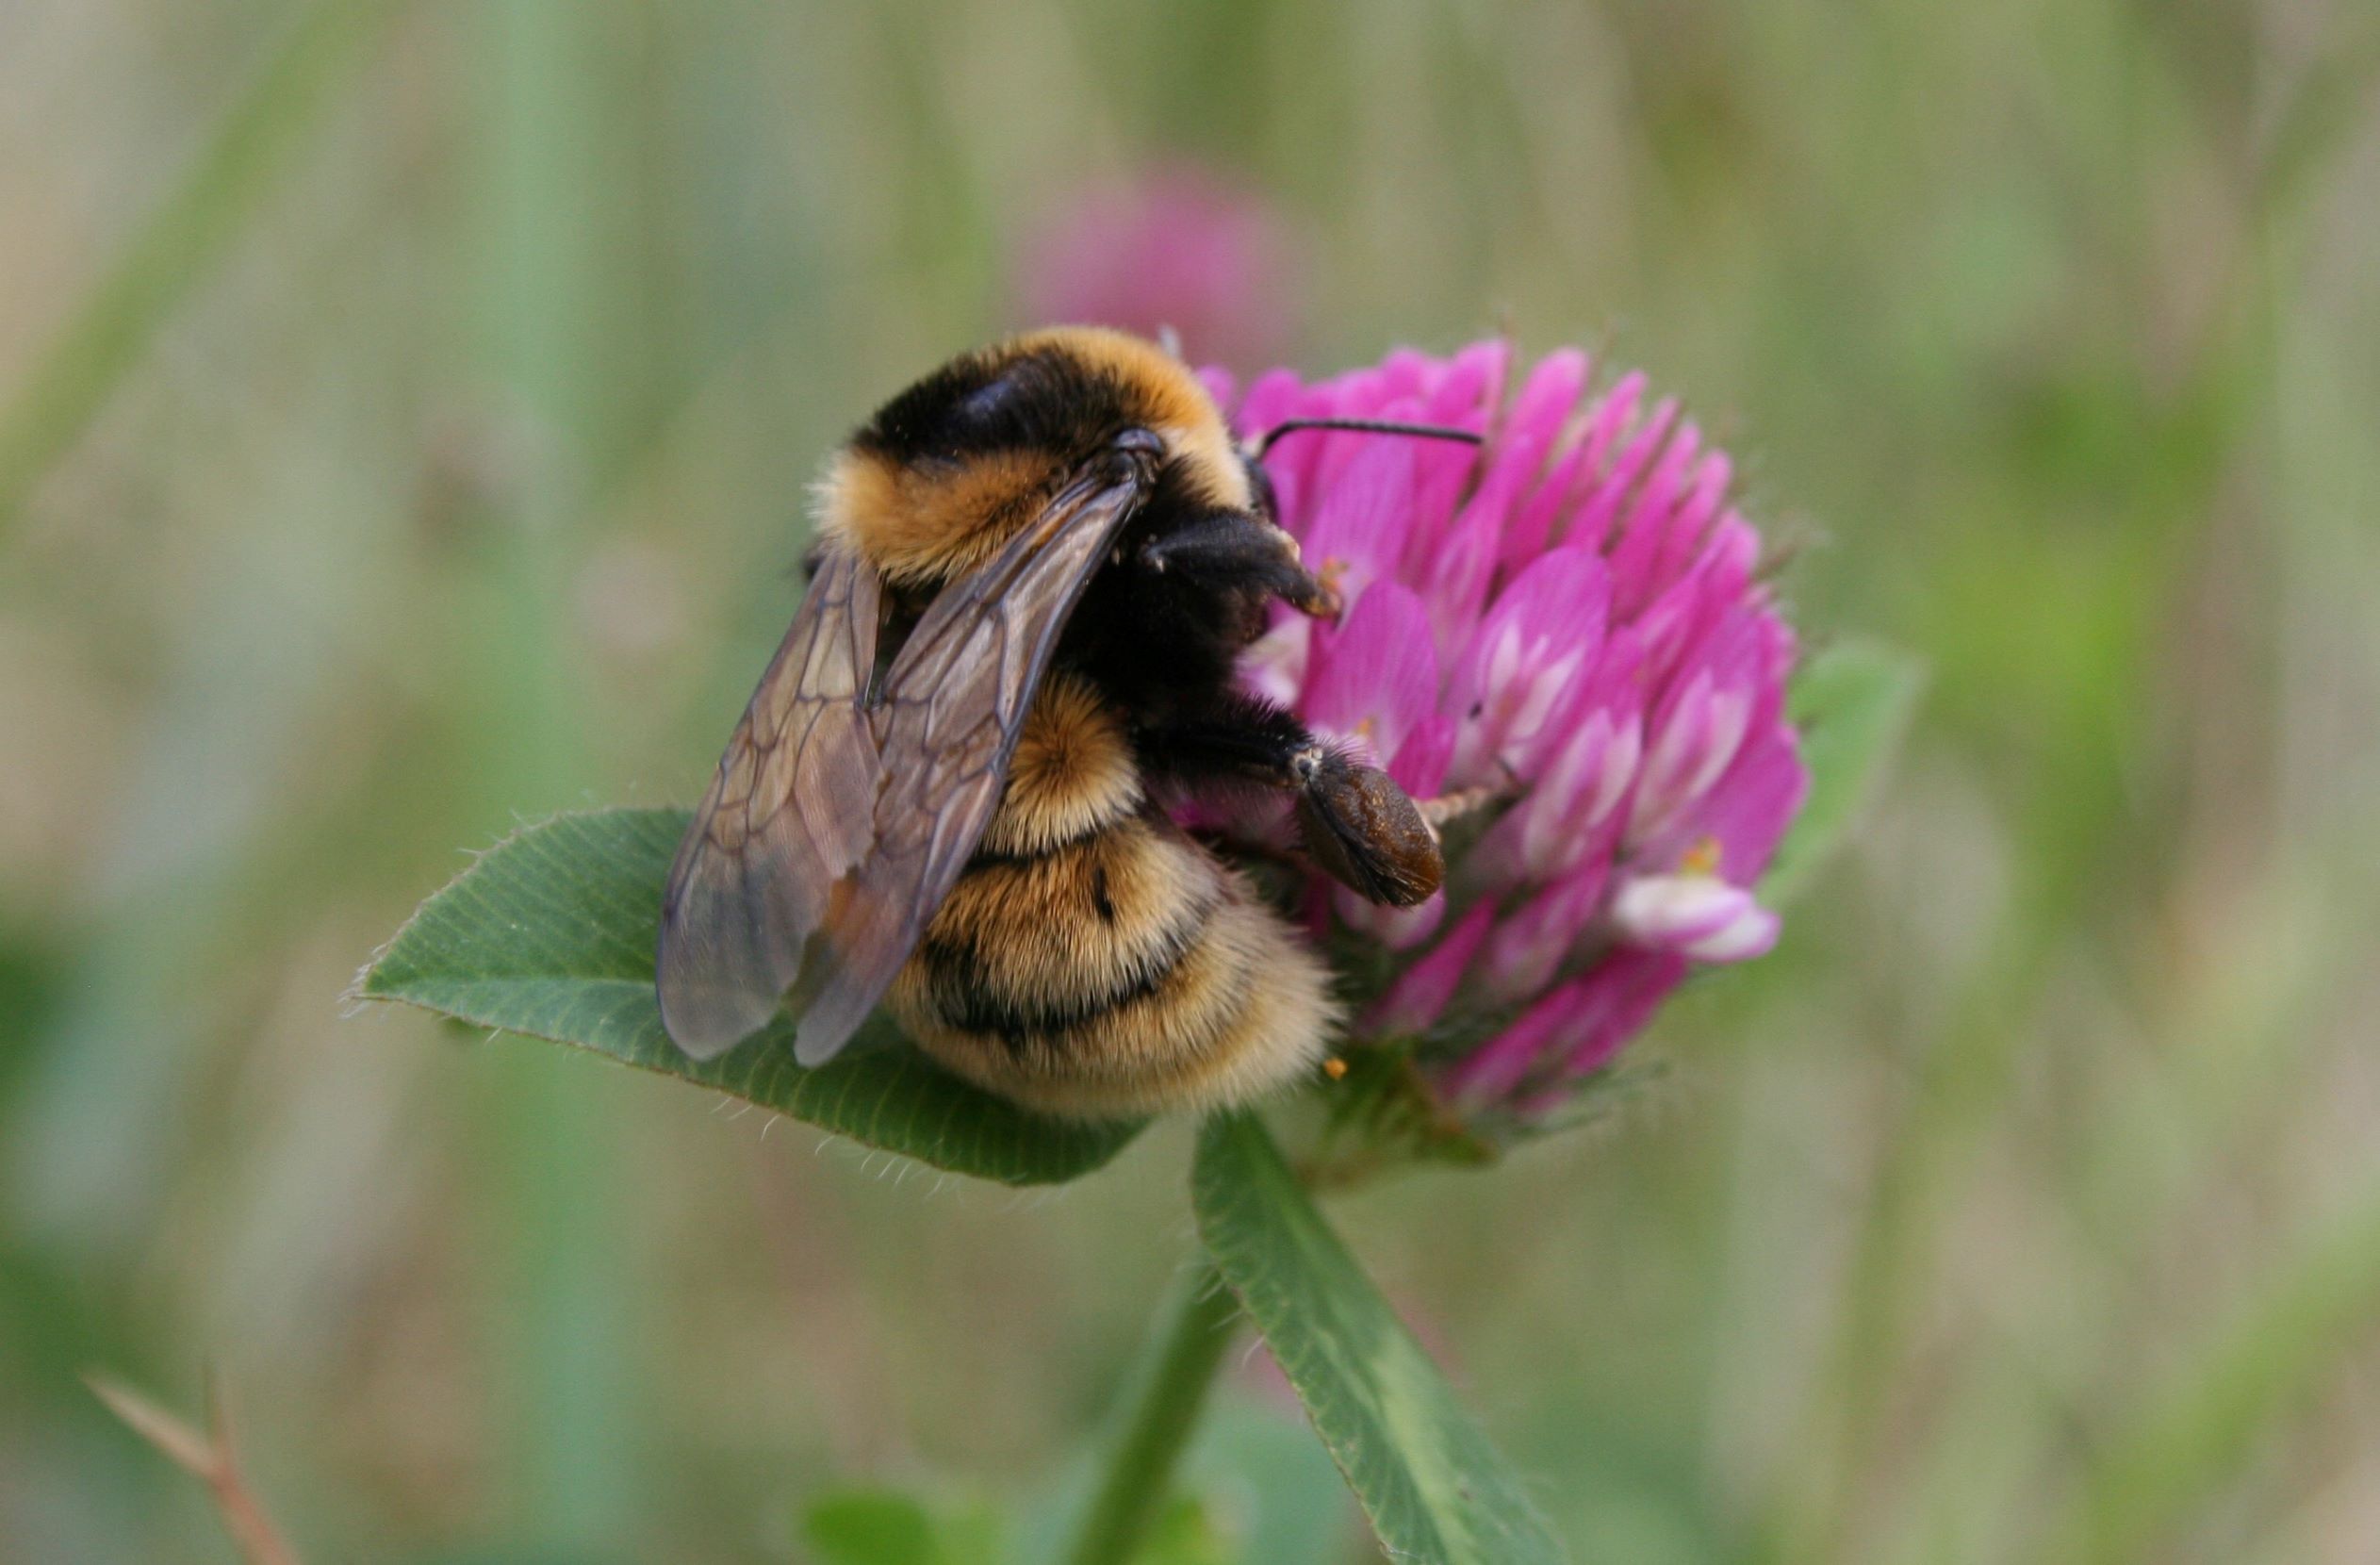 31 procent af vilde bier er truede eller uddøde